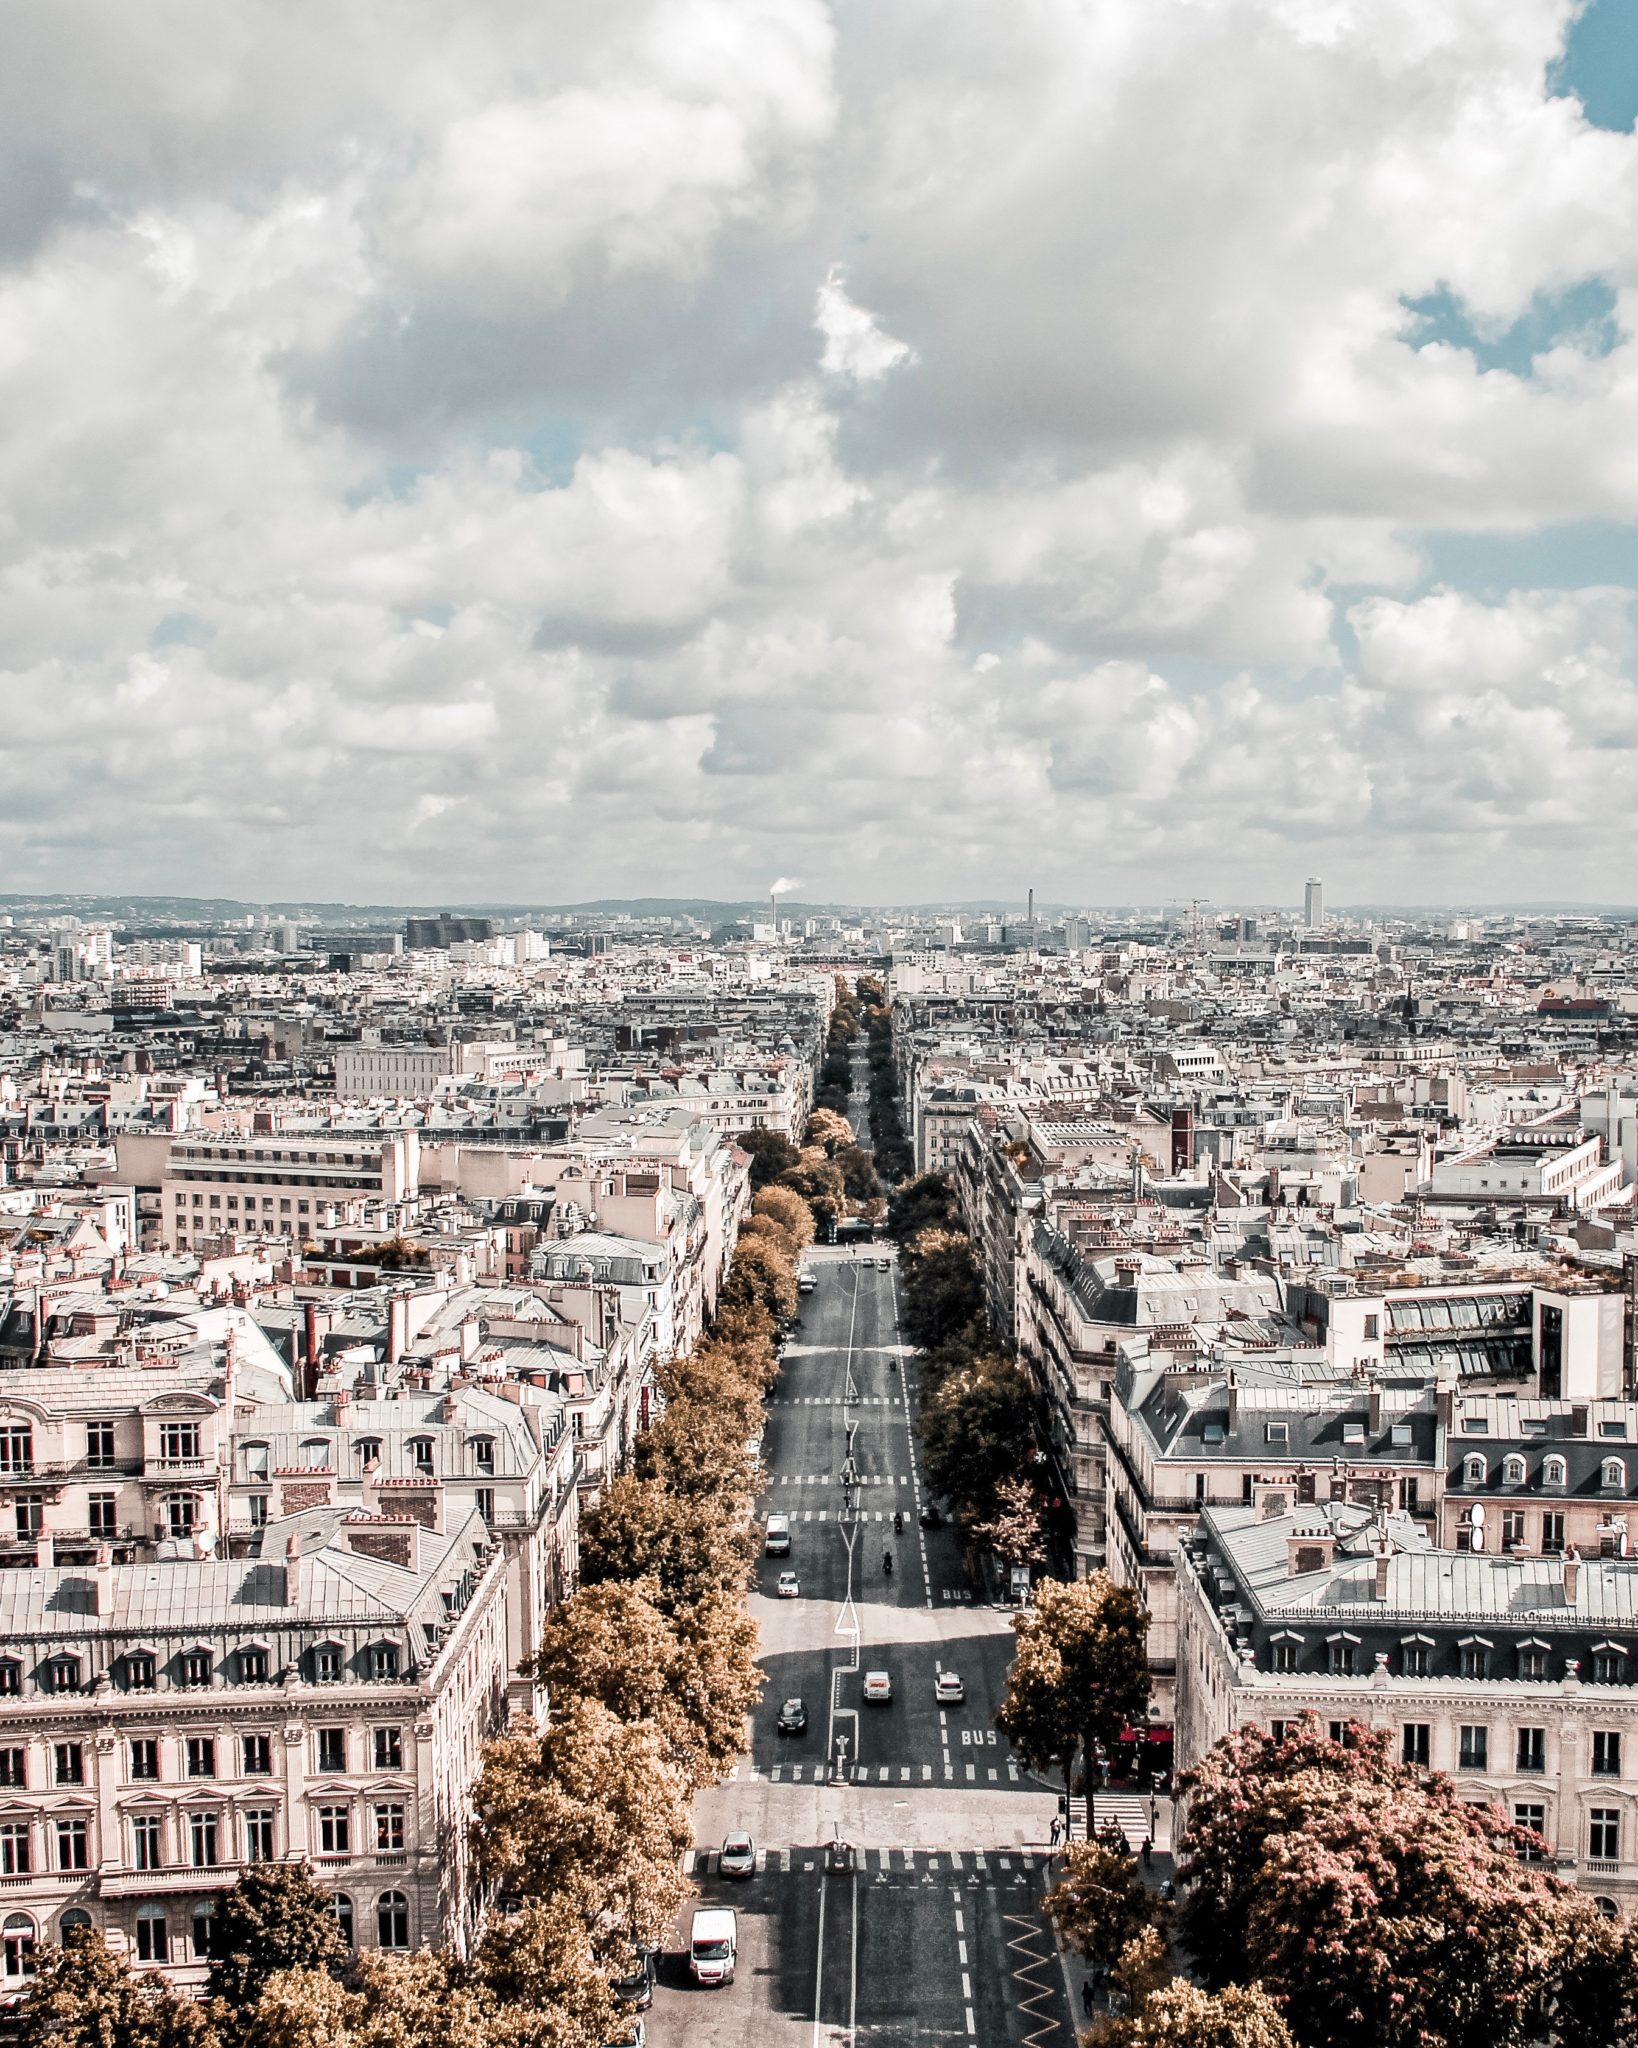 Paris Neighbourhood Guide: The Avenue des Champs-Elysées